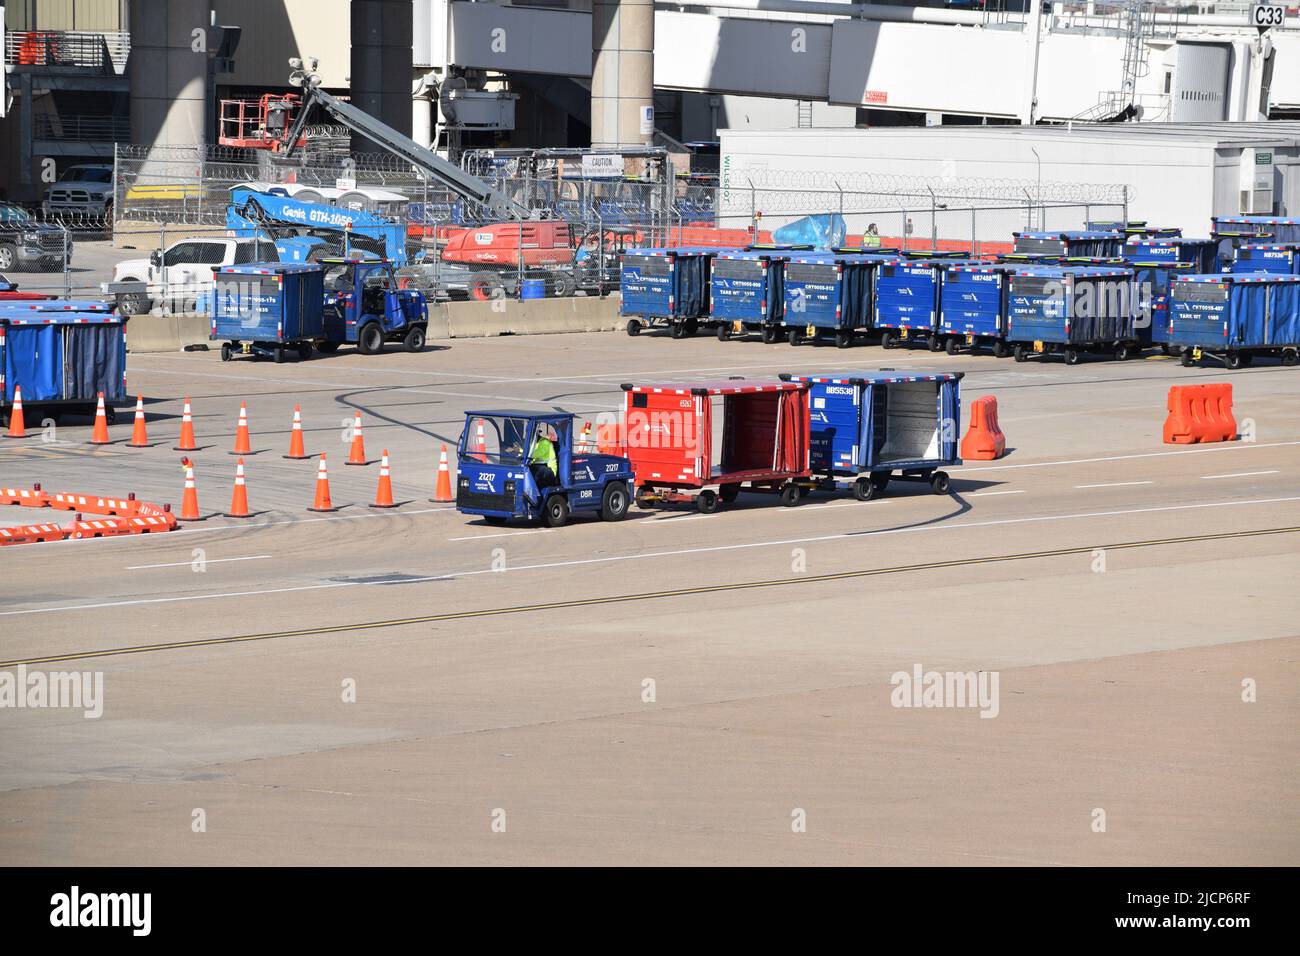 Un employé des services de rampe d'American Airlines conduit un tracteur tirant des chariots à bagages à l'extérieur du terminal C de l'aéroport DFW (aéroport de Dallas-fort Worth) Banque D'Images